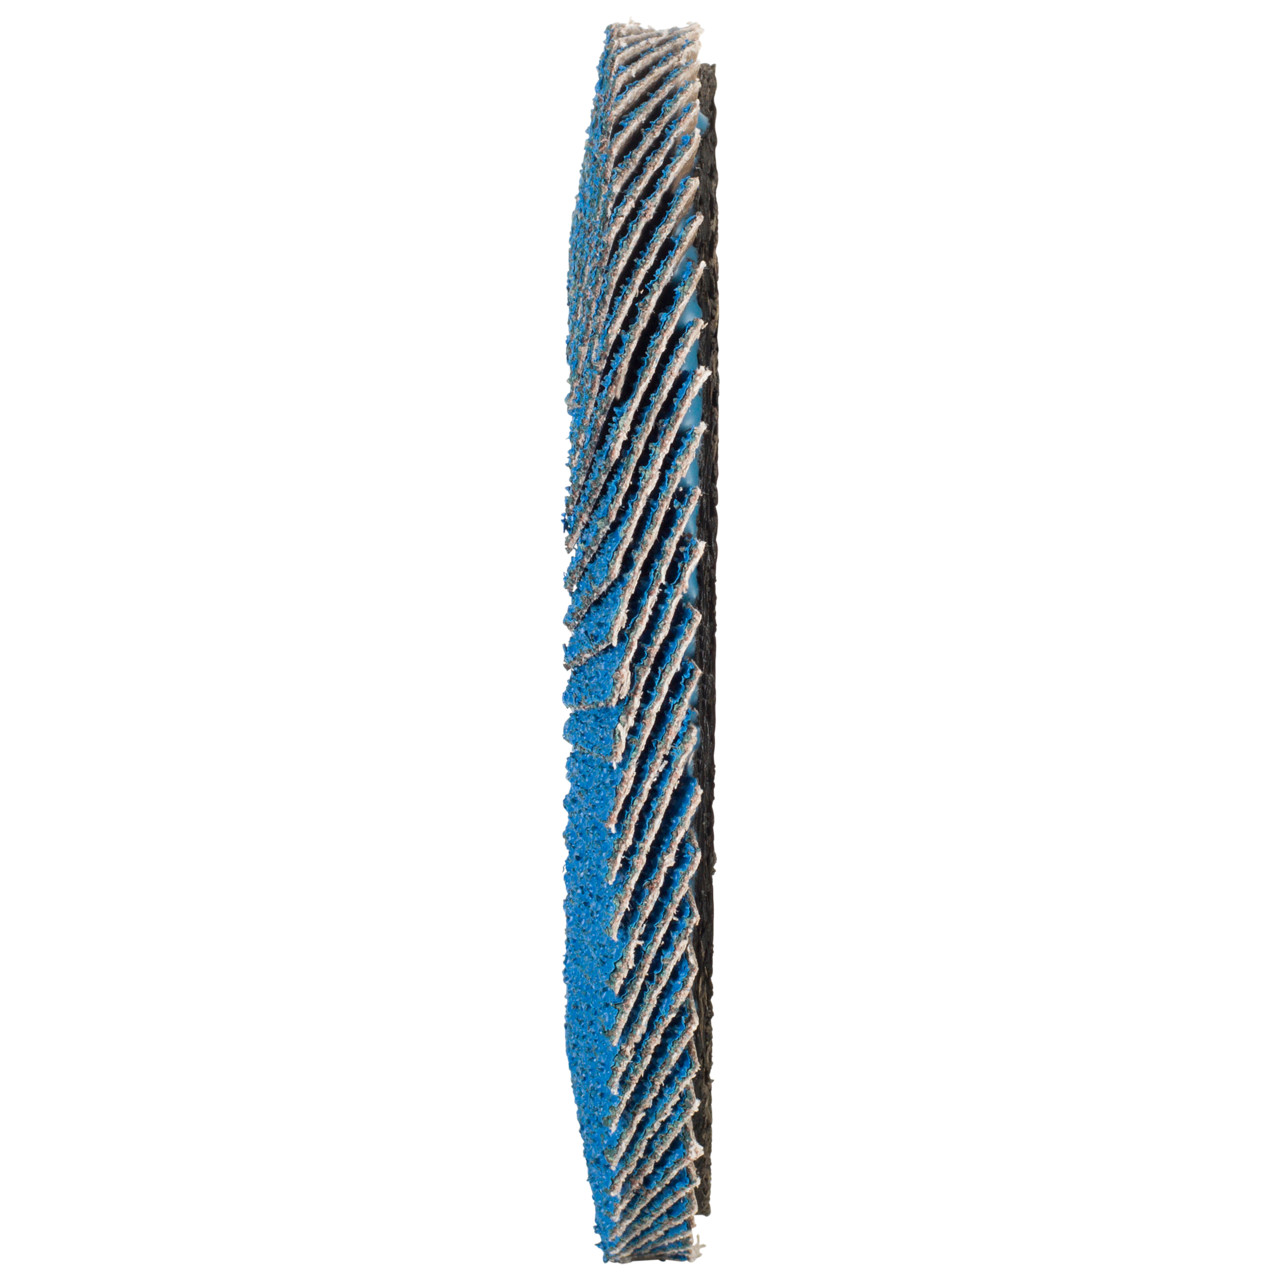 TYROLIT Fächerscheibe DxH 115x22,2 FASTCUT für Stahl & Edelstahl, P40, Form: 28N - gerade Ausführung (Kunststoffträgerkörper), Art. 458028